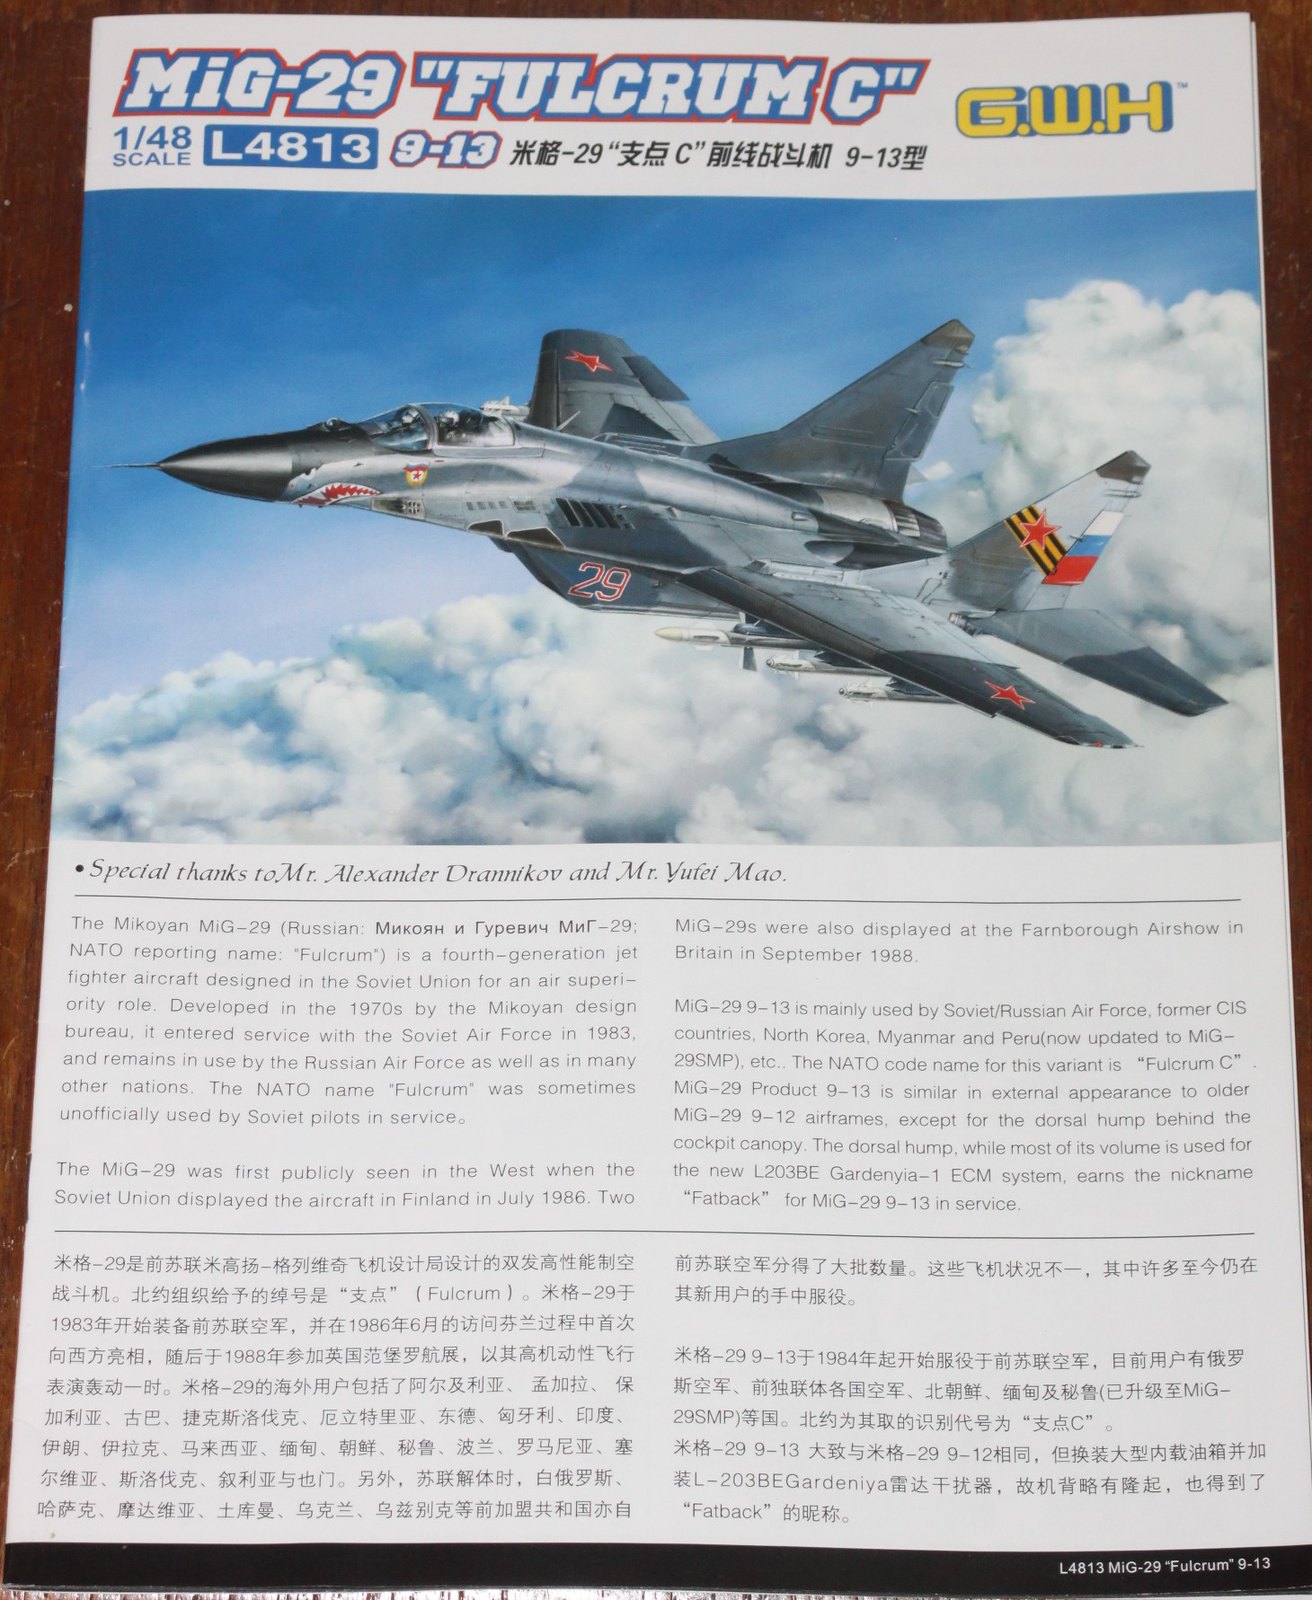 MiG-29 "Fulcrum C", G.W.H  1/48 51971951372_1272b44e49_h